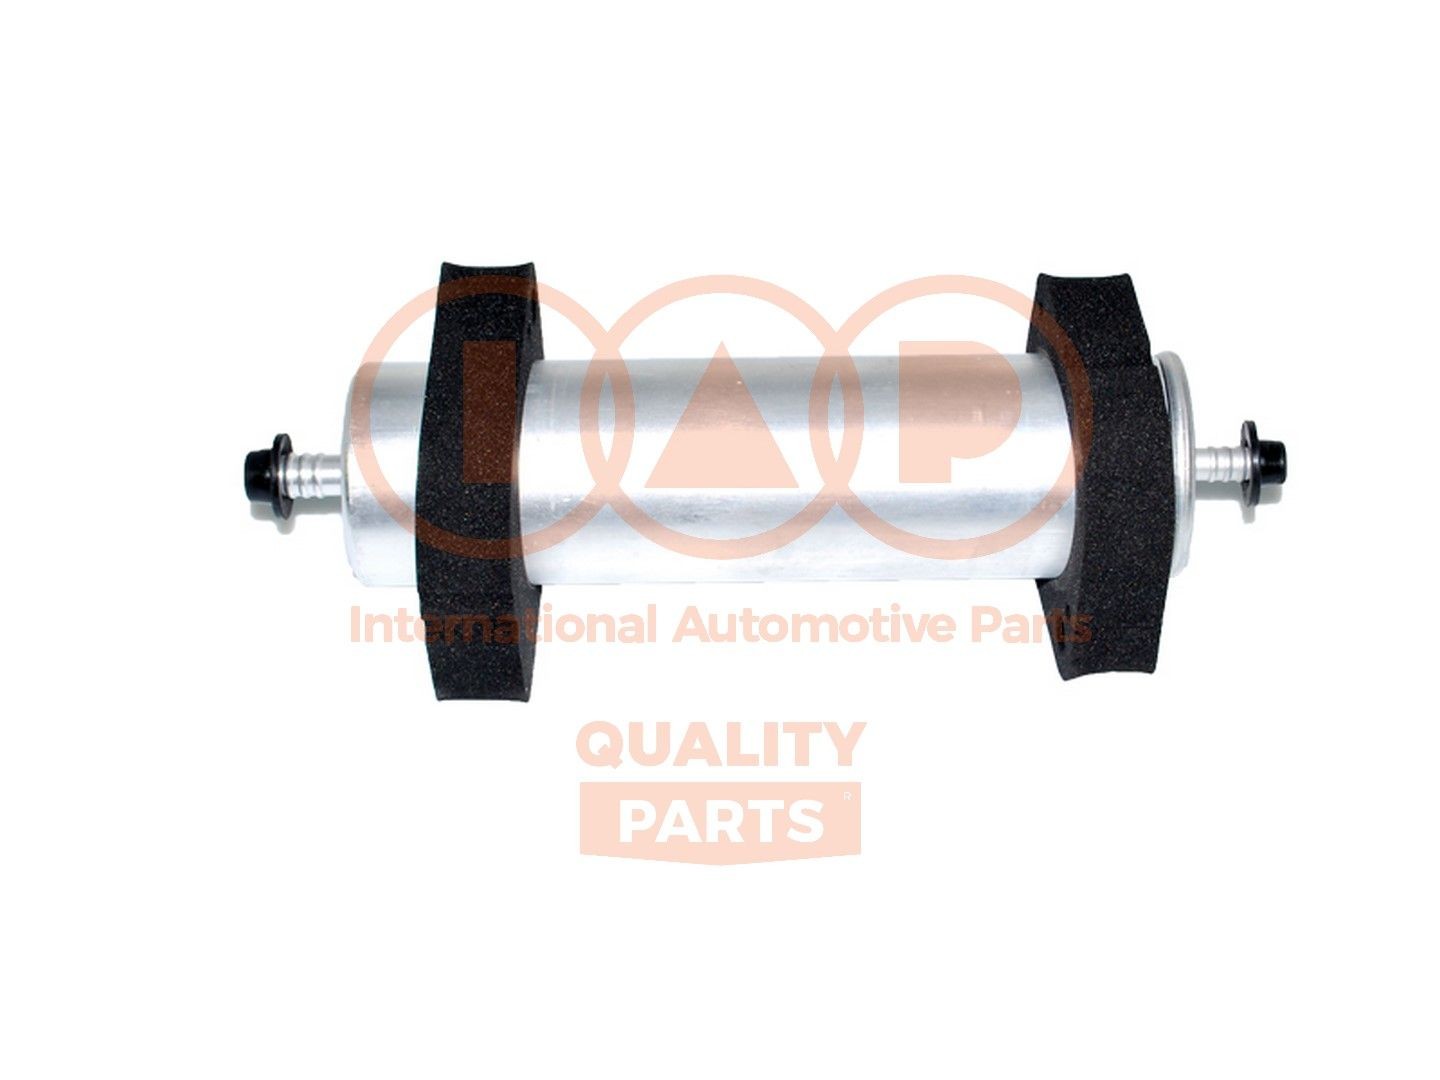 Original IAP QUALITY PARTS Fuel filters 122-50040 for AUDI A4